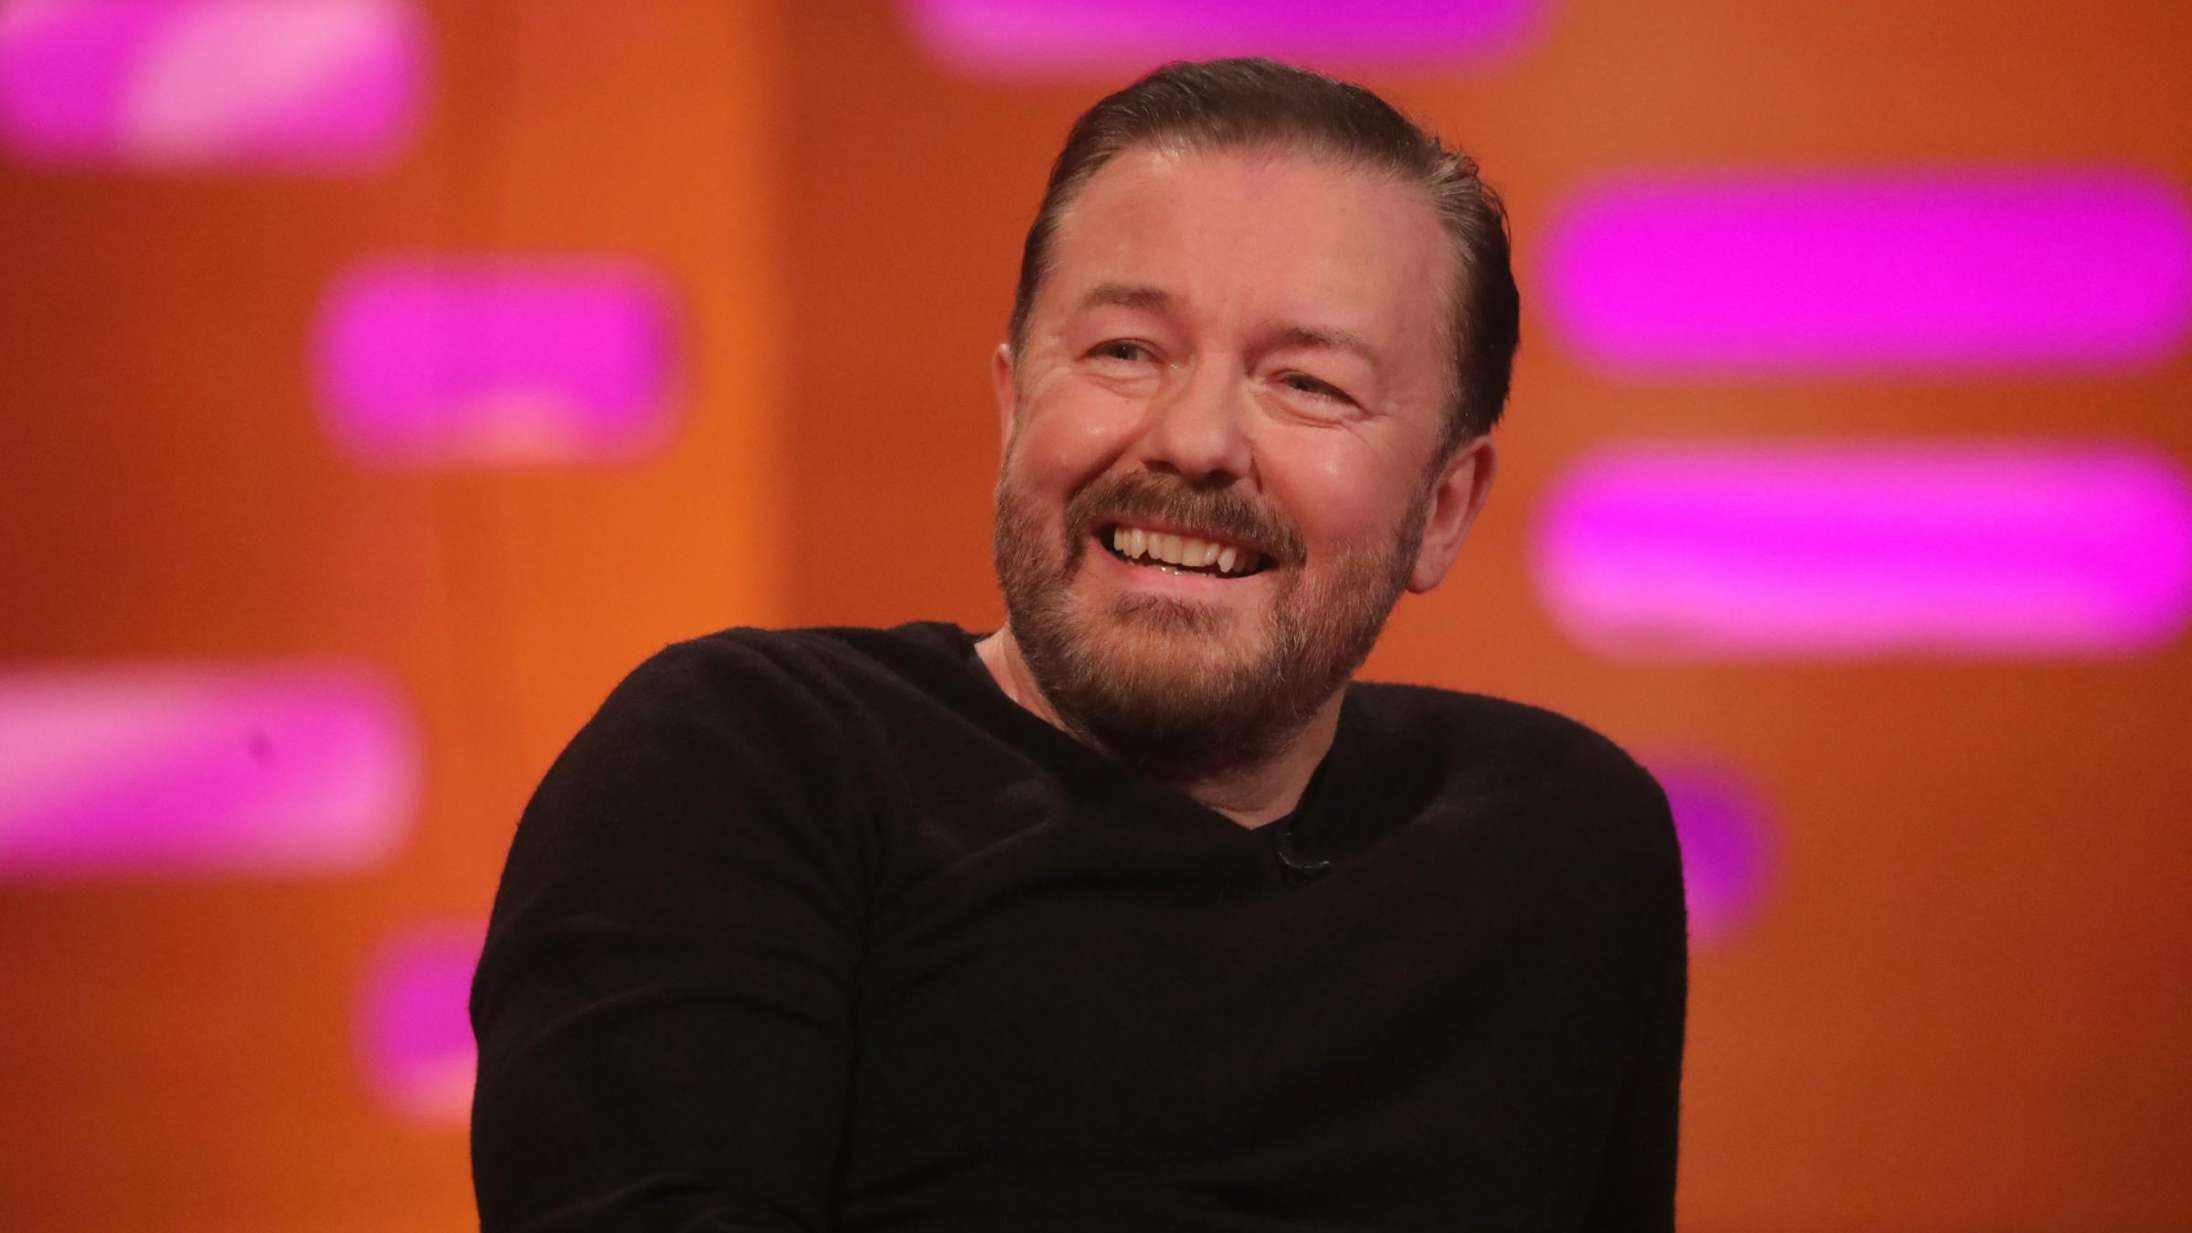 Ricky Gervais kritiseres for transfobiske jokes i ny Netflix-special